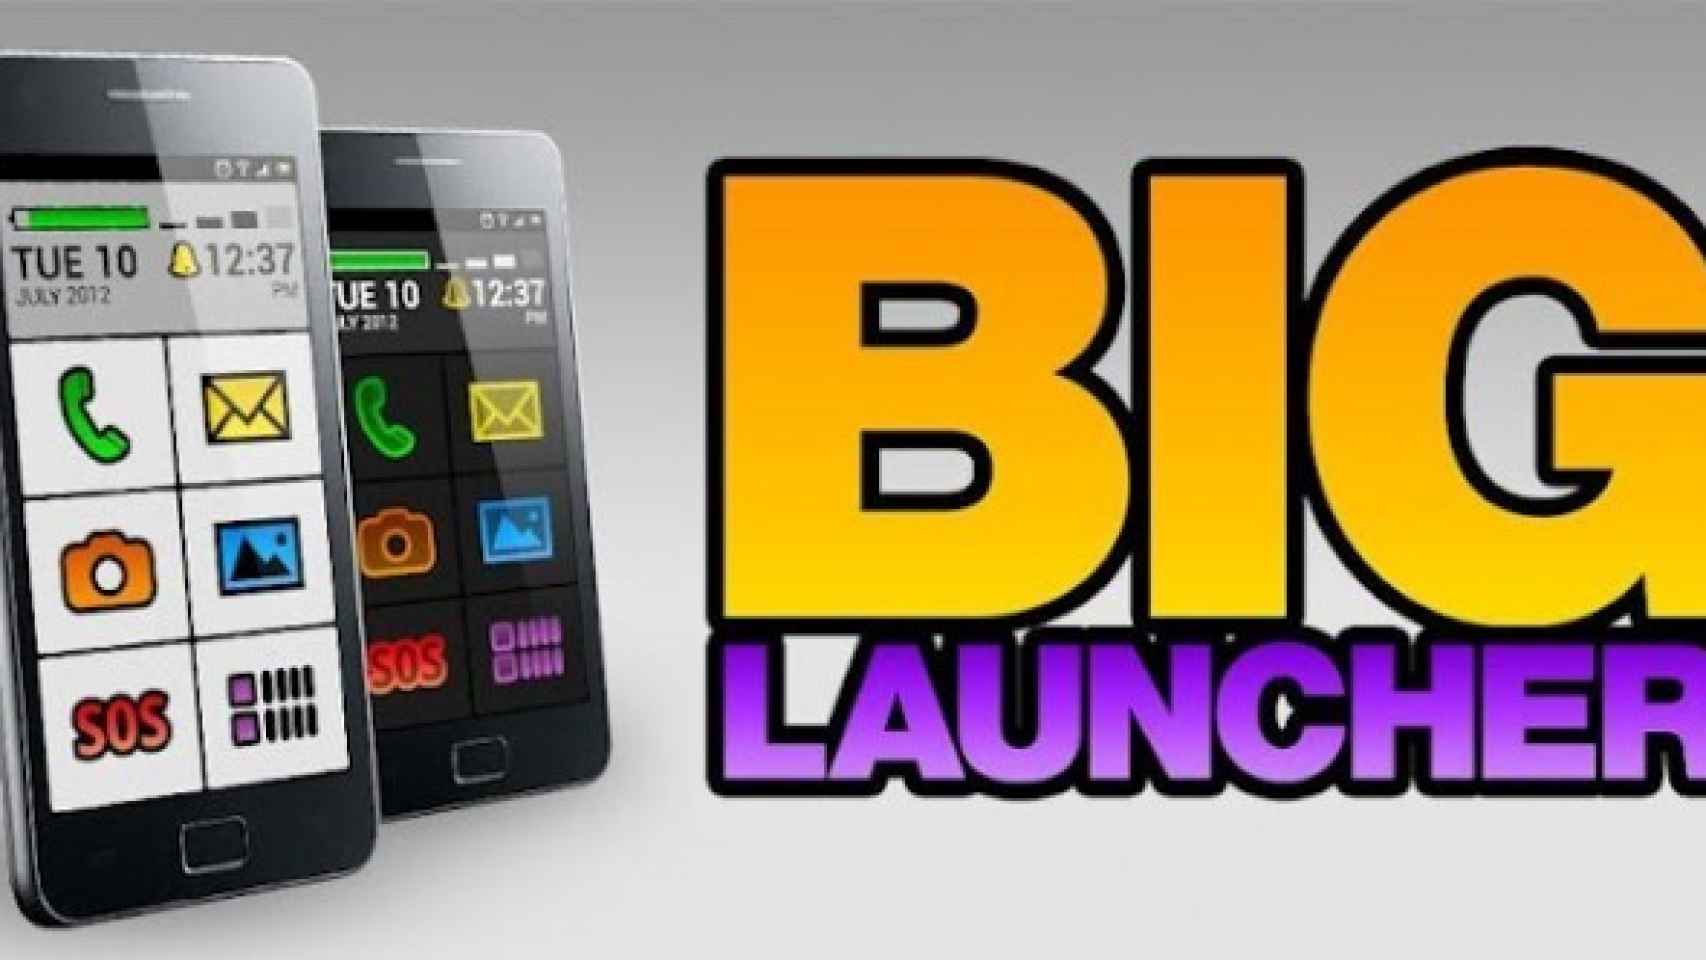 Big Launcher 2.0: El launcher más sencillo y eficaz de todos, ahora mejorado